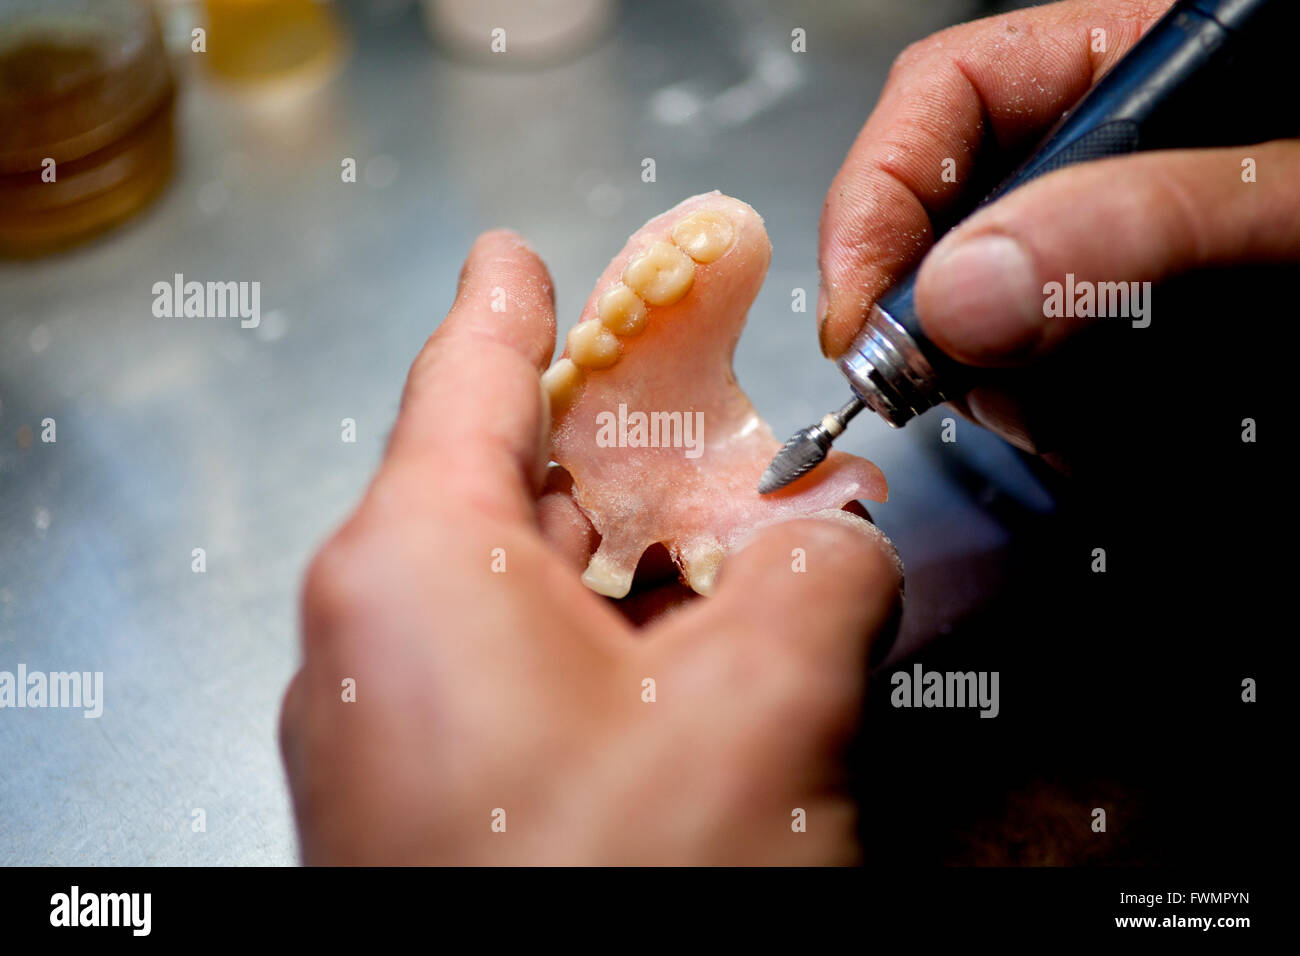 Repairing Artificial Human Teeth Stock Photo